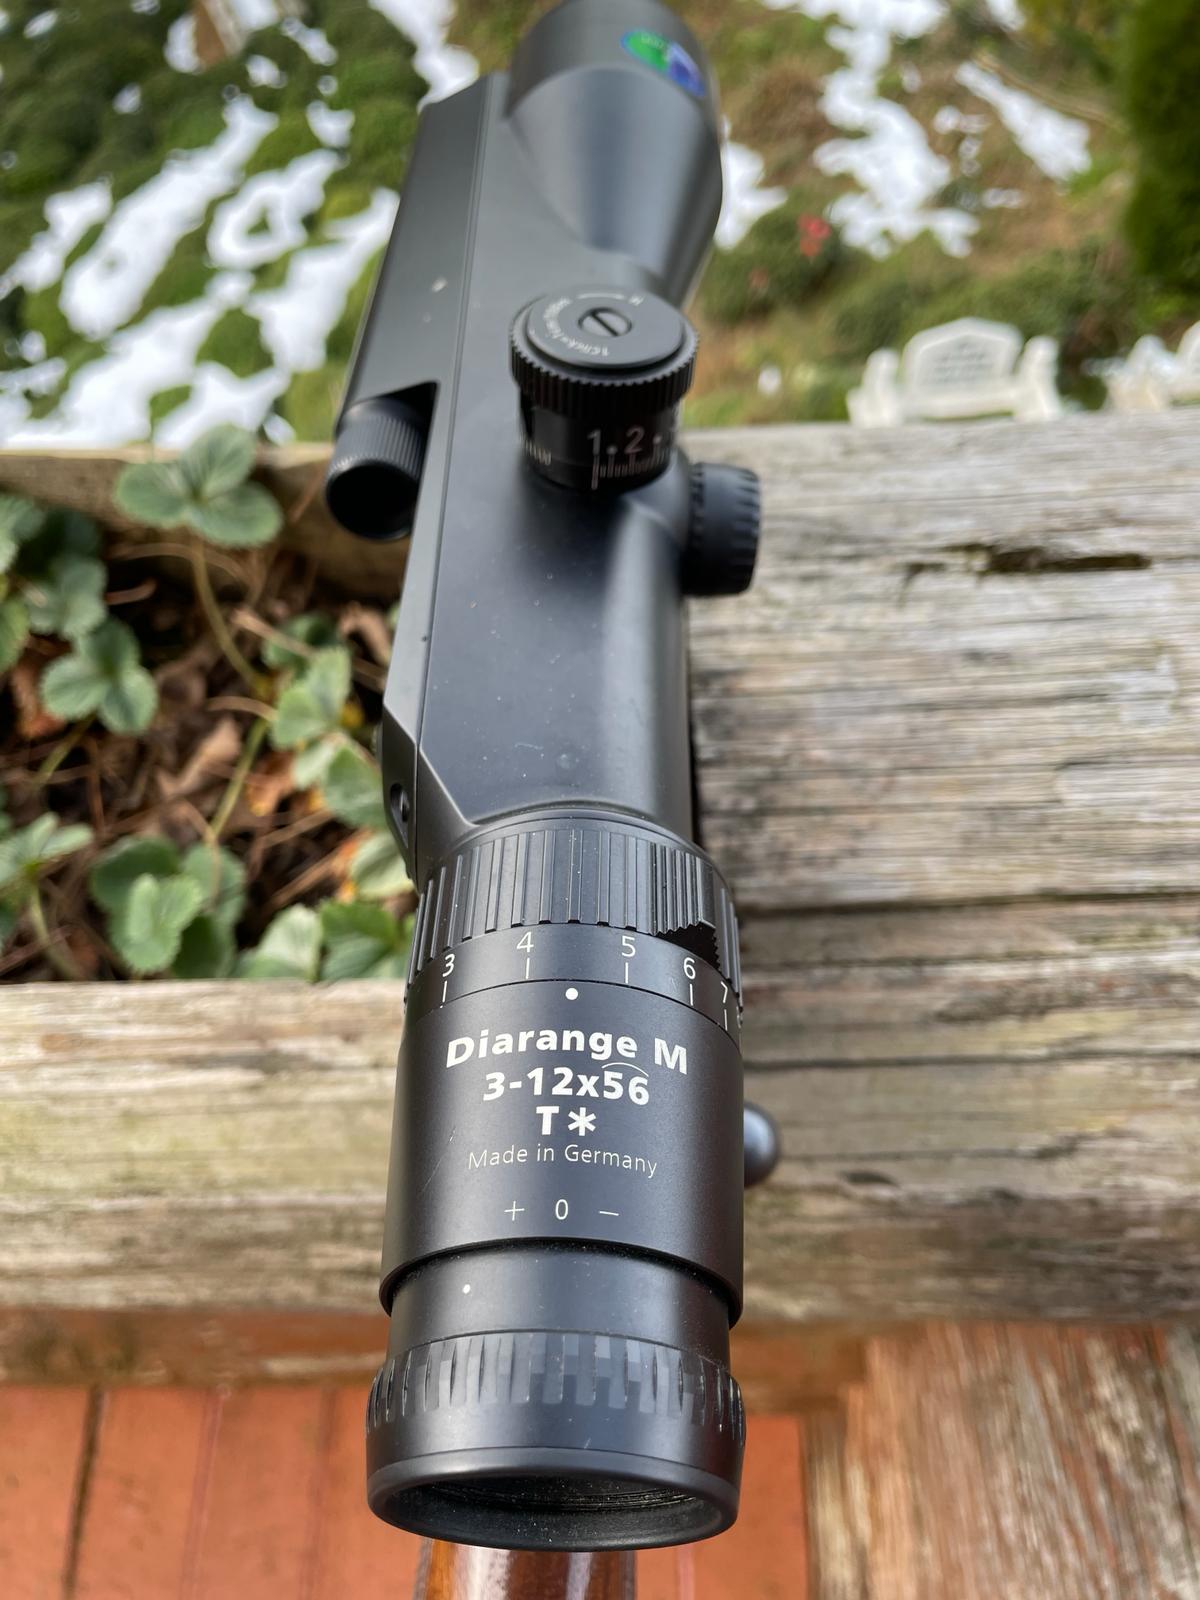 CZ550 7mm remington magnum - Zeiss Victory Diarange M 3-12x56 T* mesafe ölçerli dürbün ile satılık.